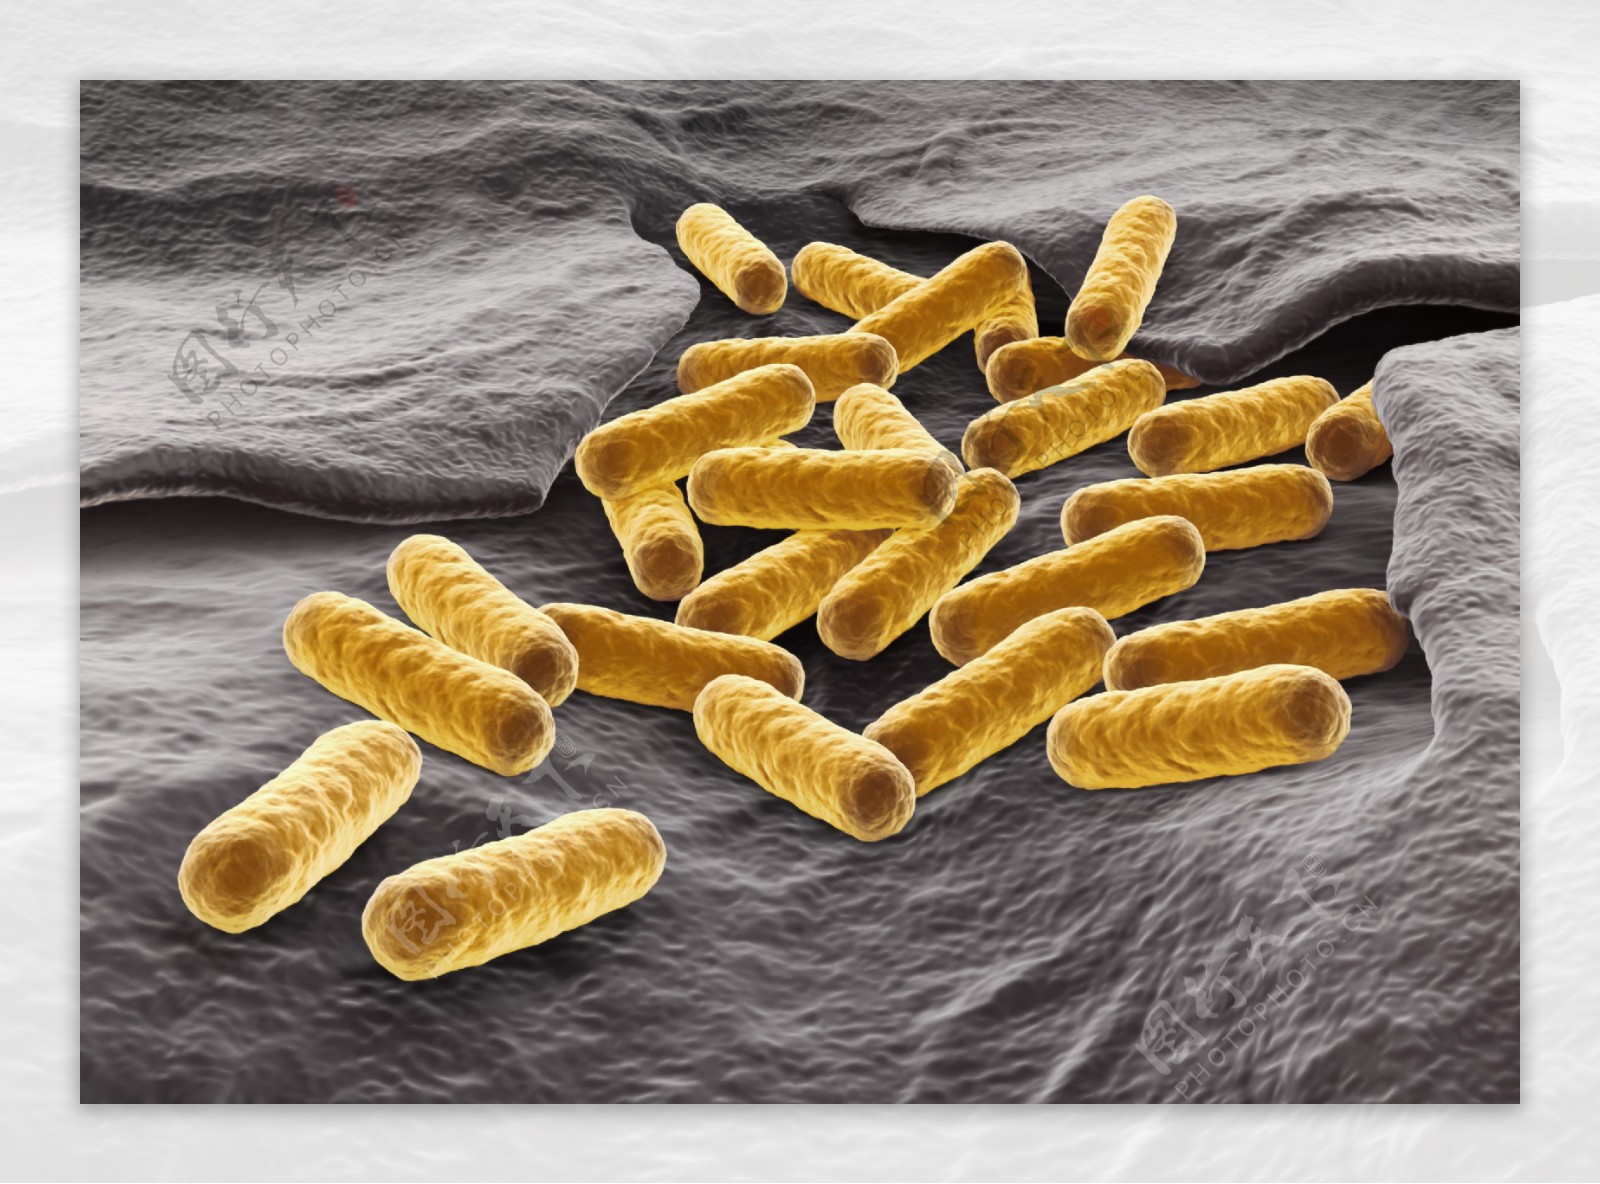 细胞微生物细菌生物学图片